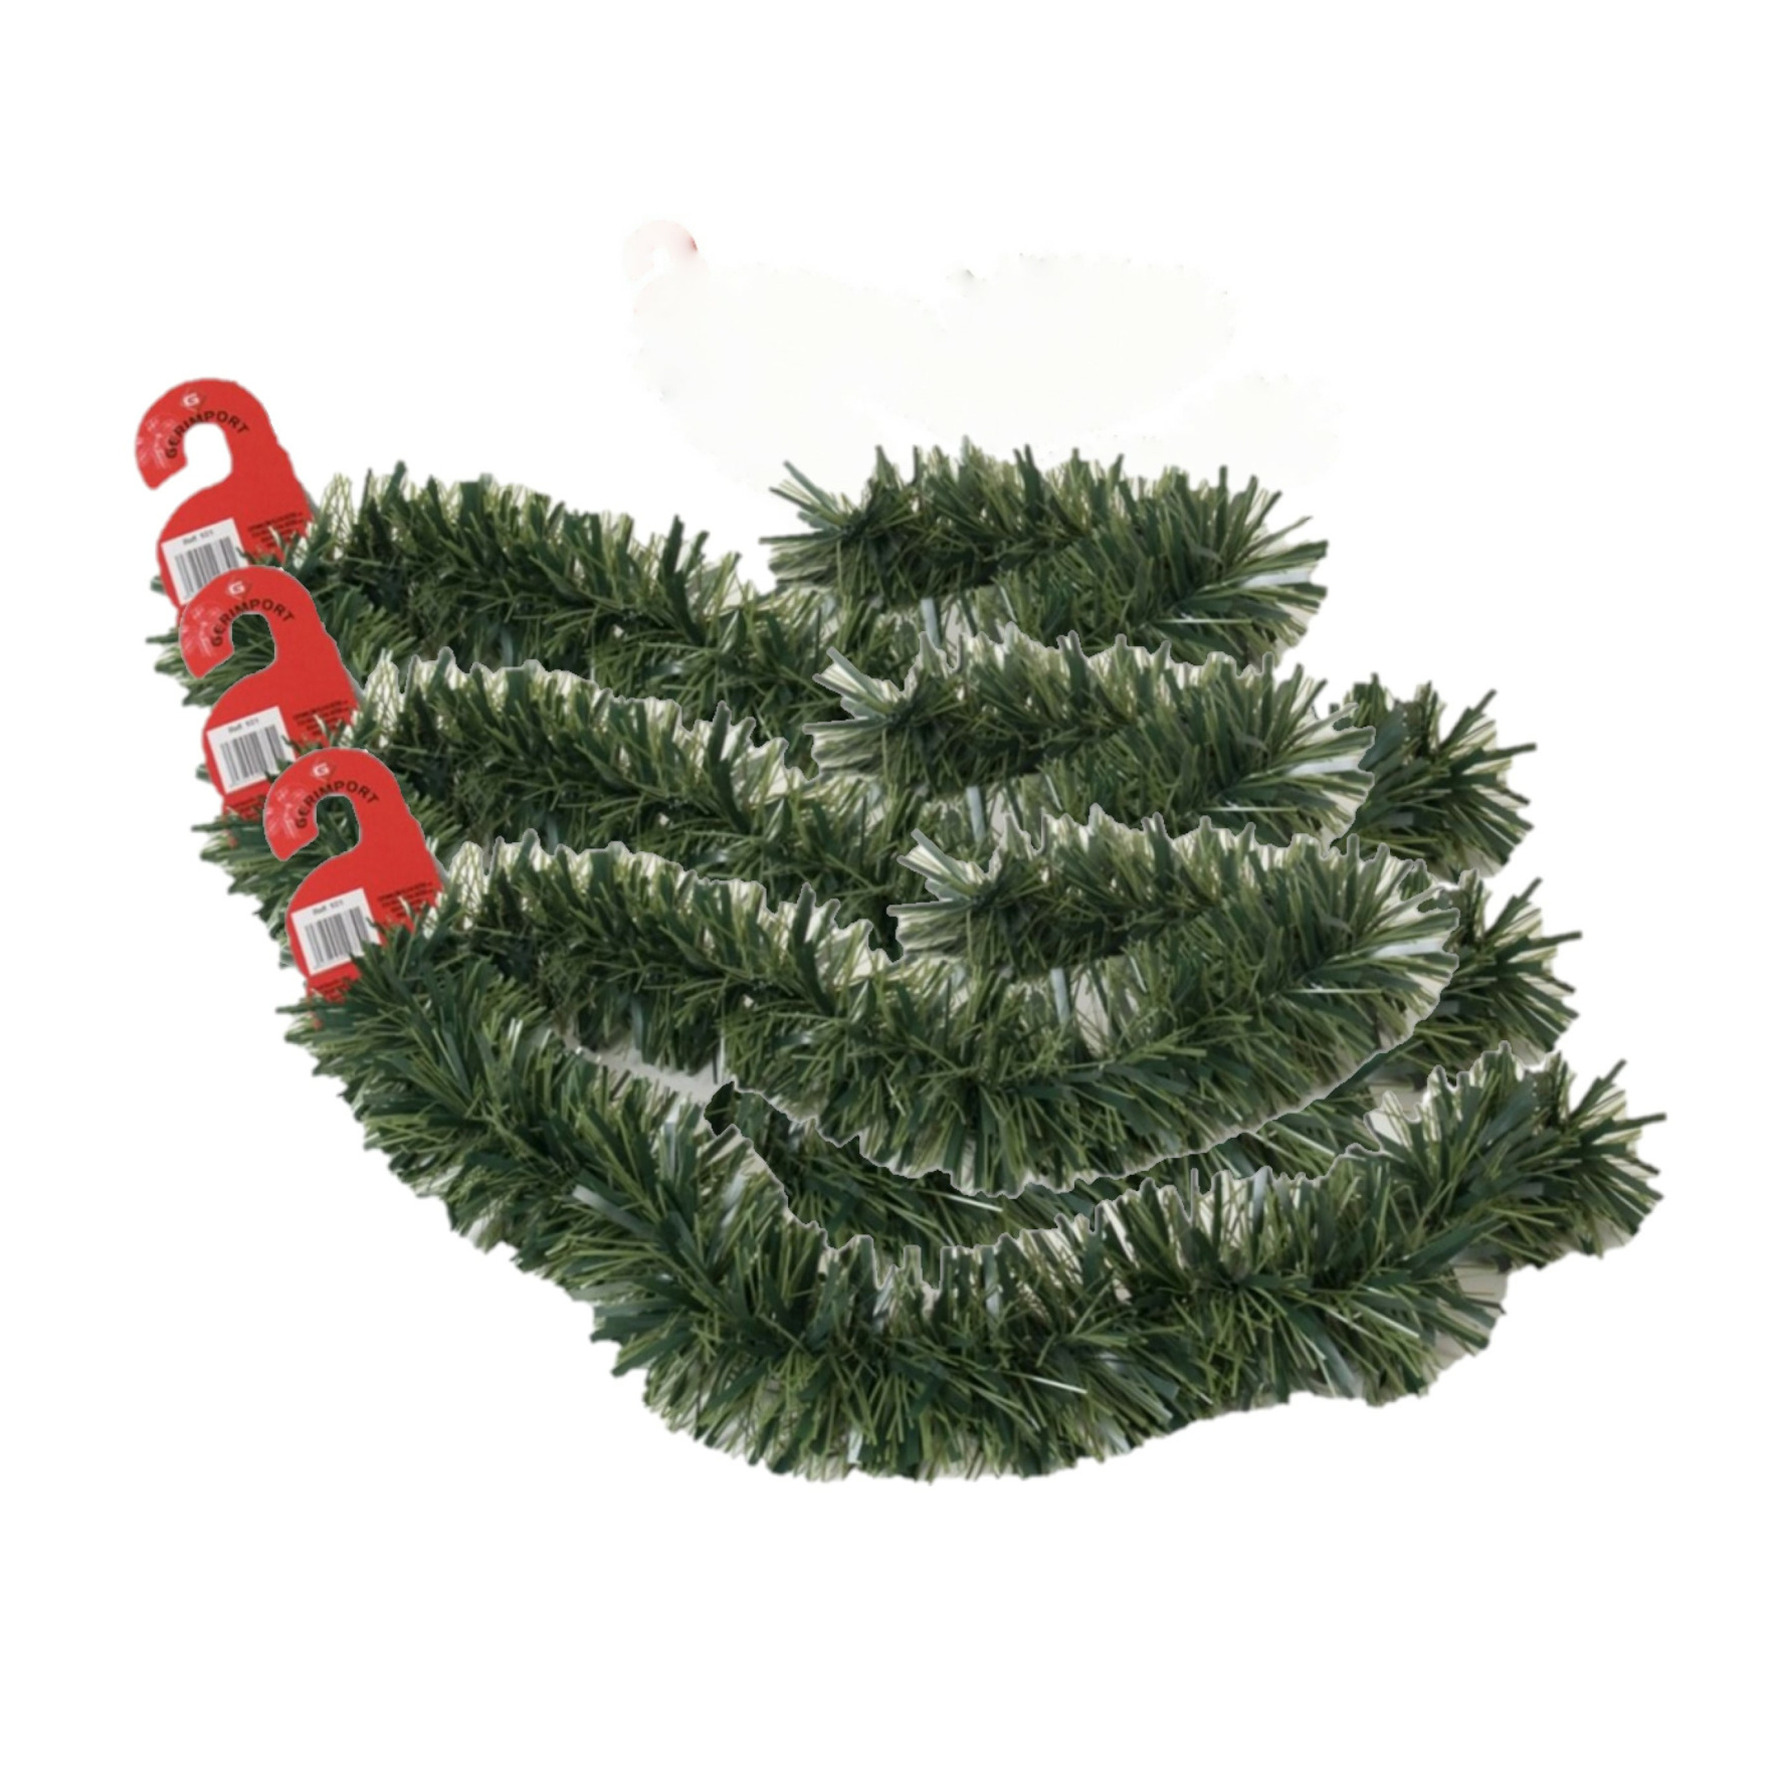 3x stuks kerstboom folie slingers-lametta guirlandes van 180 x 12 cm in de kleur glitter groen